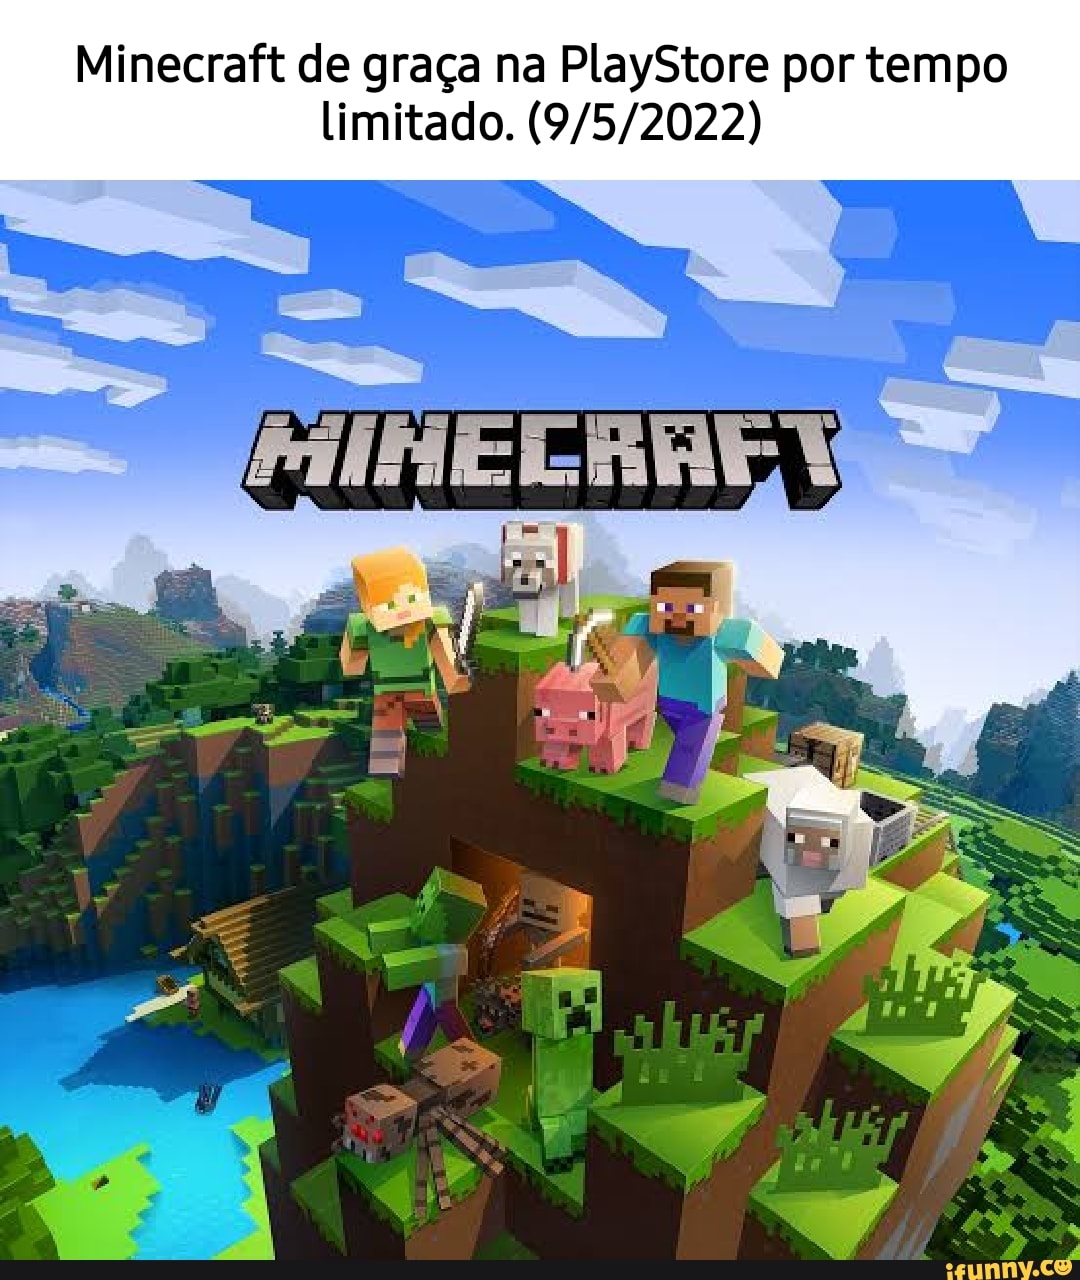 Acho que ele está me enganando ABRIR Minecraft online Amúncio Forneça jogos  de alta qualidade gratuitamente para ajudá-lo a passar o tempo chato -  iFunny Brazil